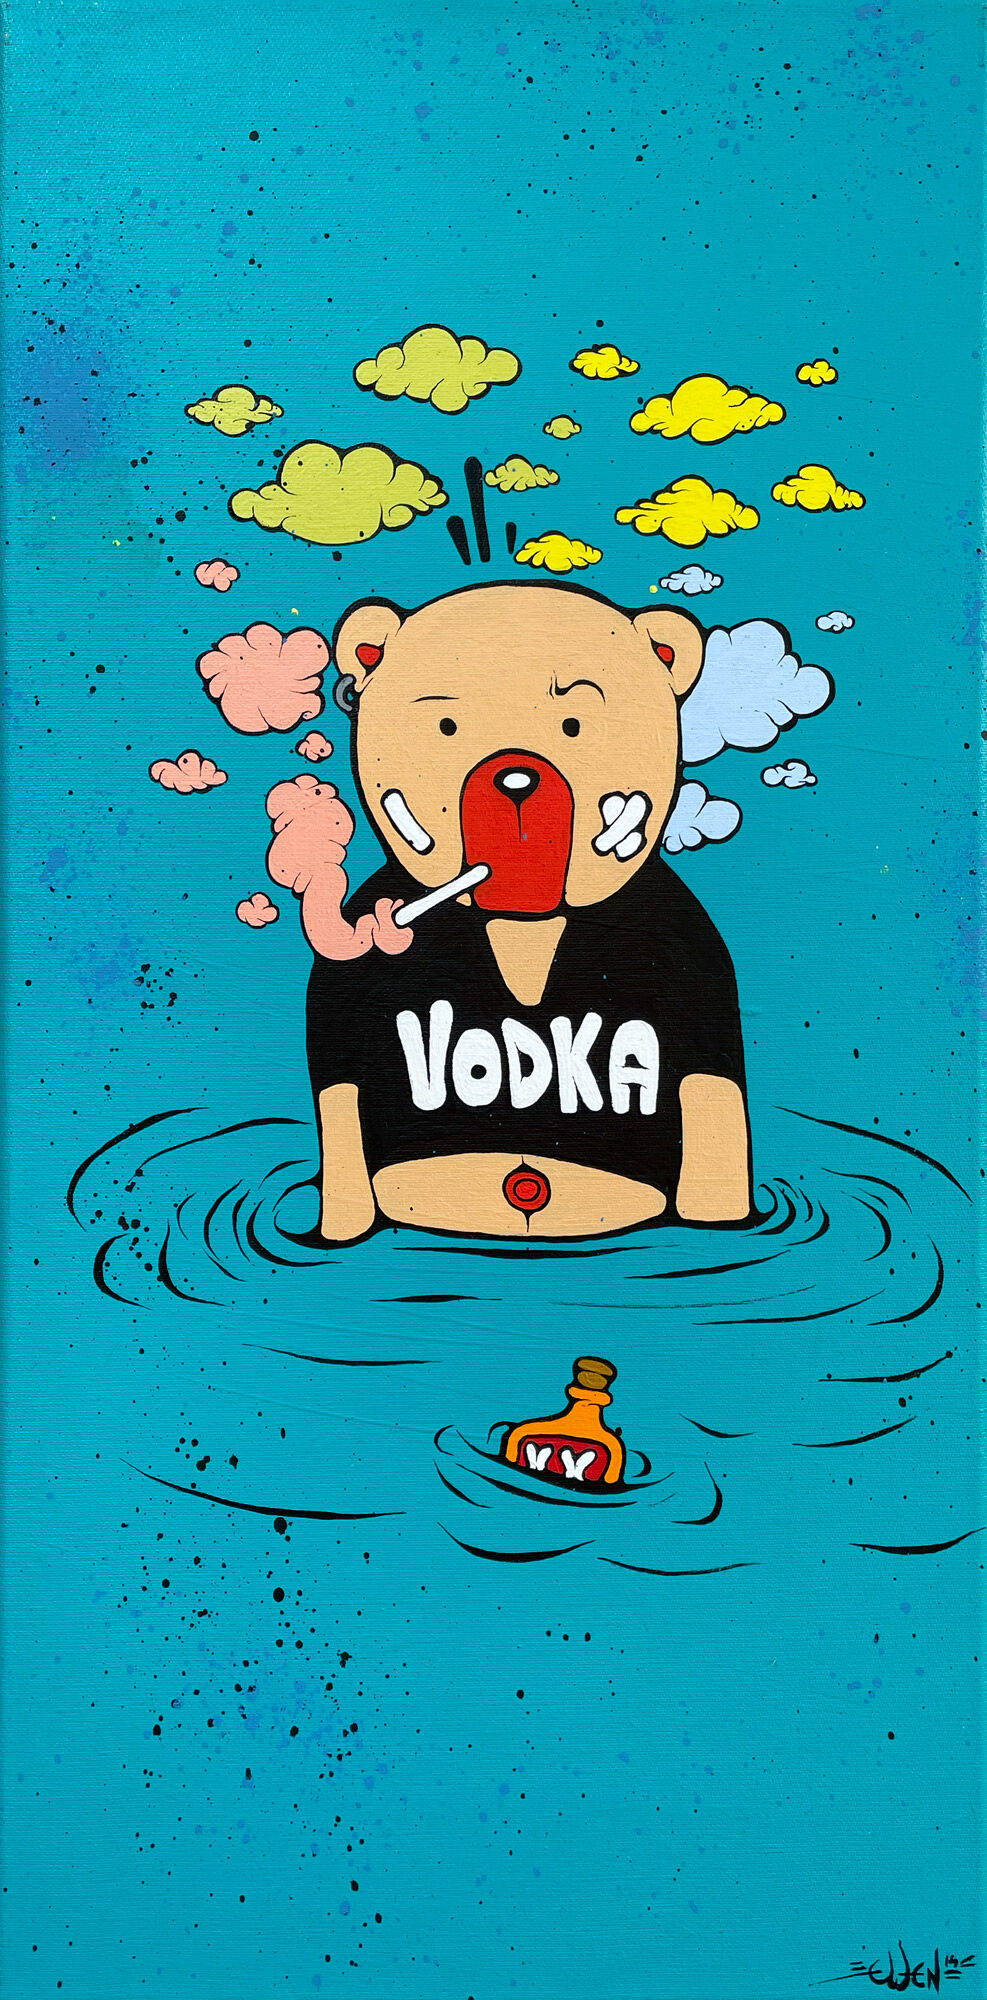 Billede "Drowning in Vodka" (2014) (Unikt værk) von Ewen Gur